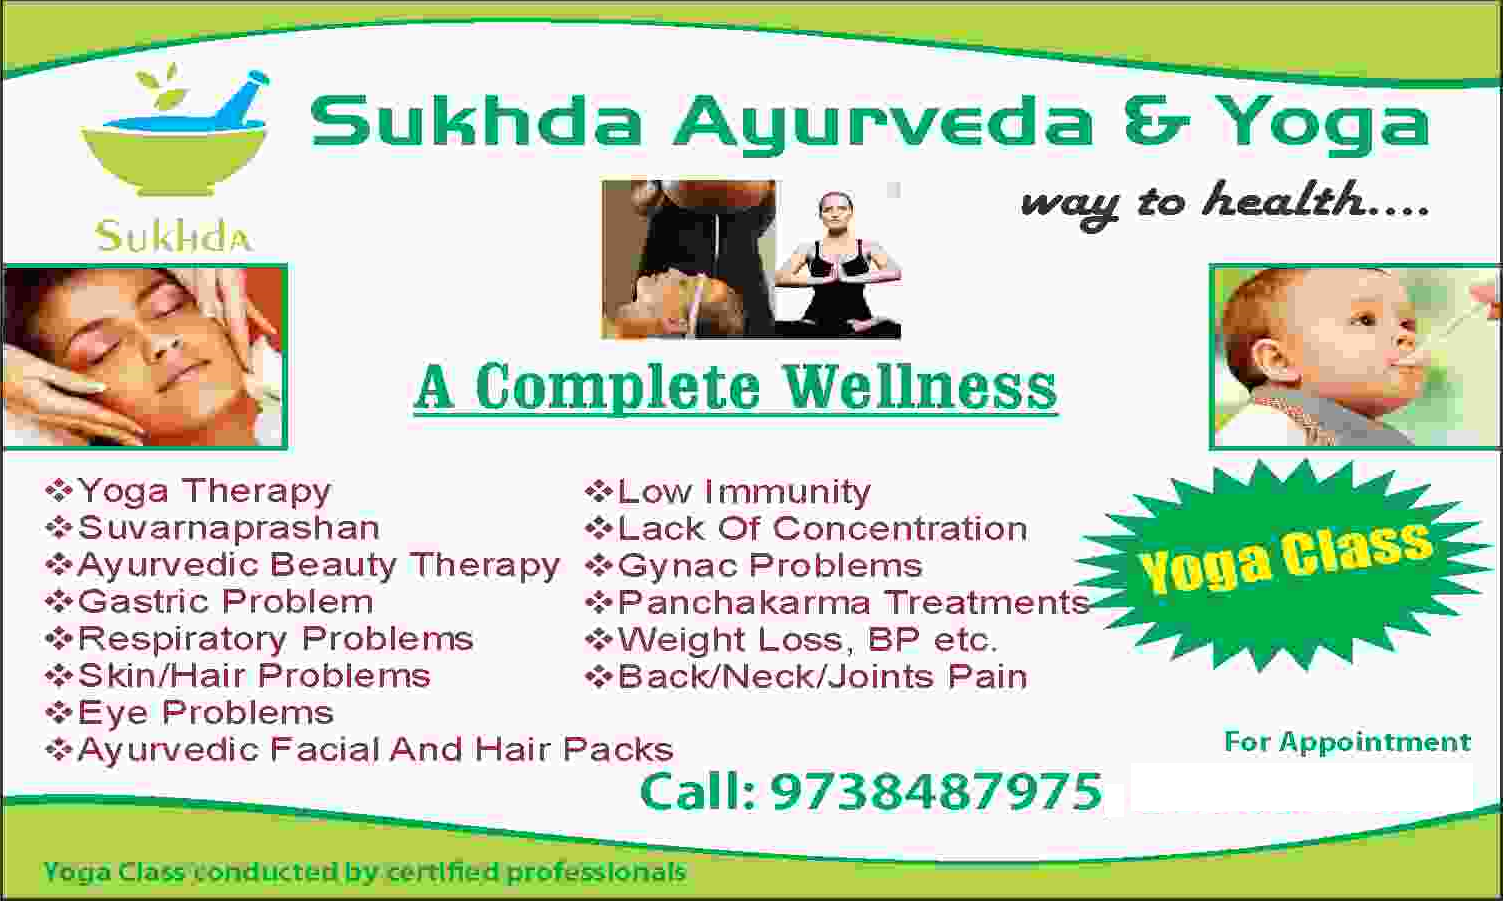 Sukhda Ayurveda & Yoga